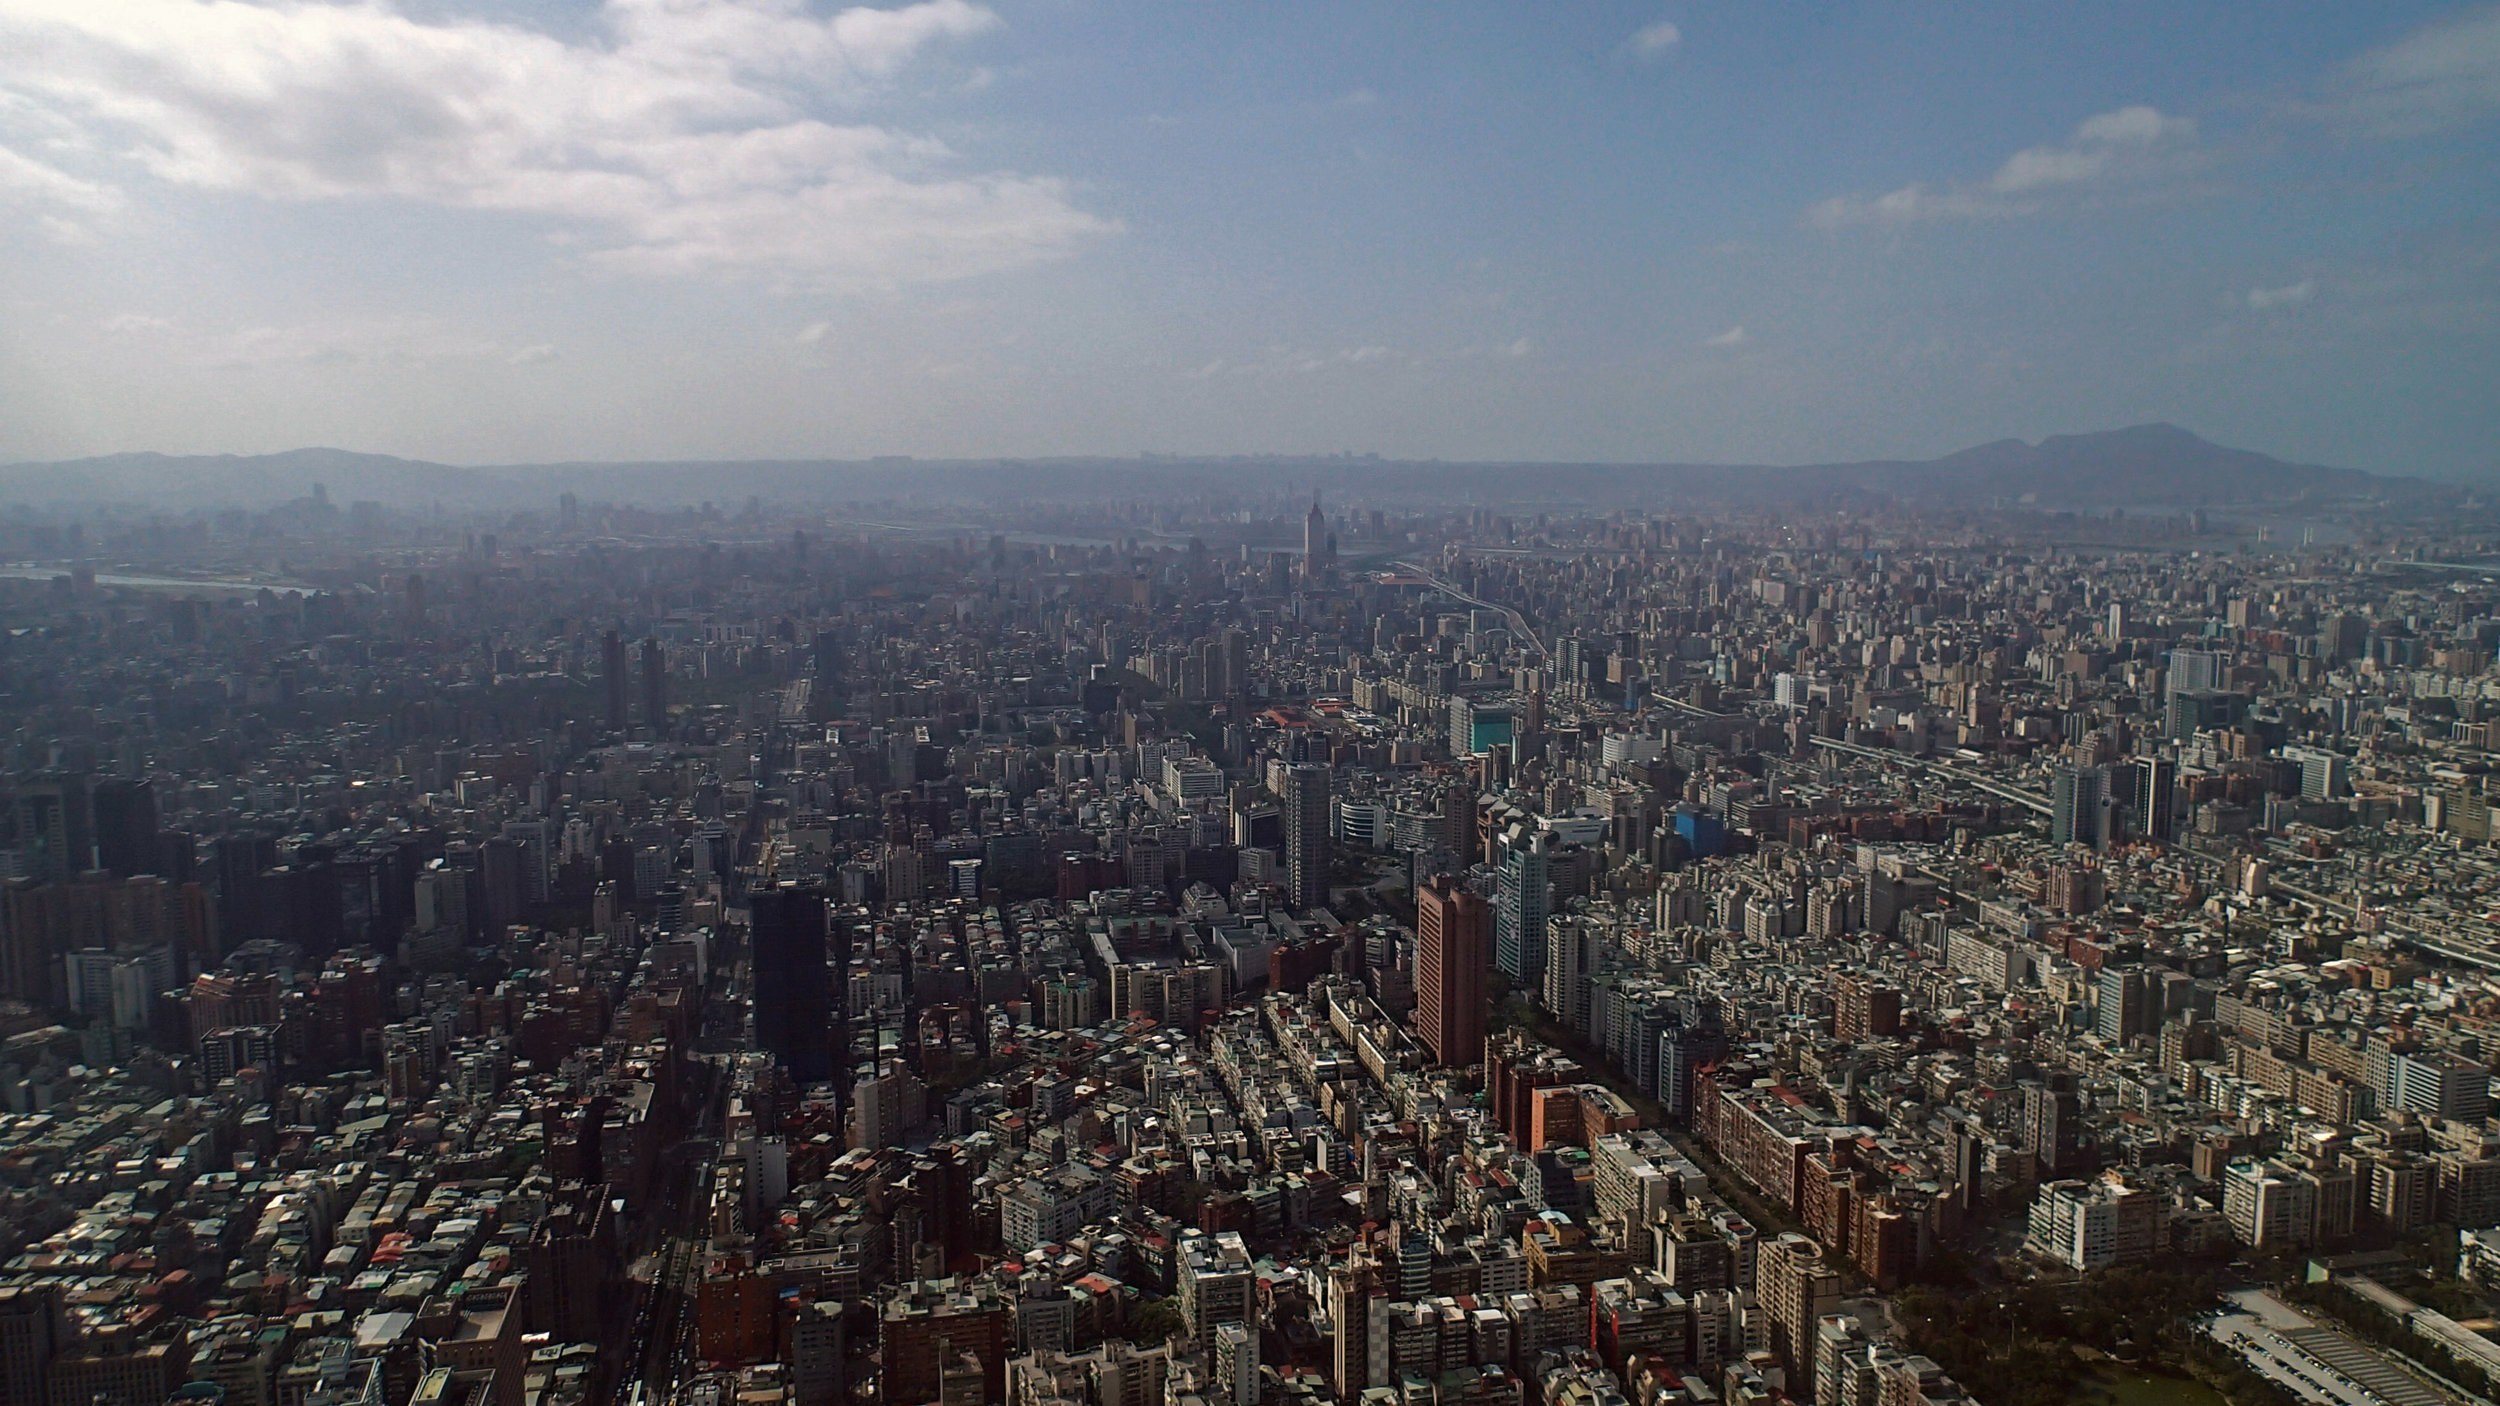 view from Taipei 101.jpg